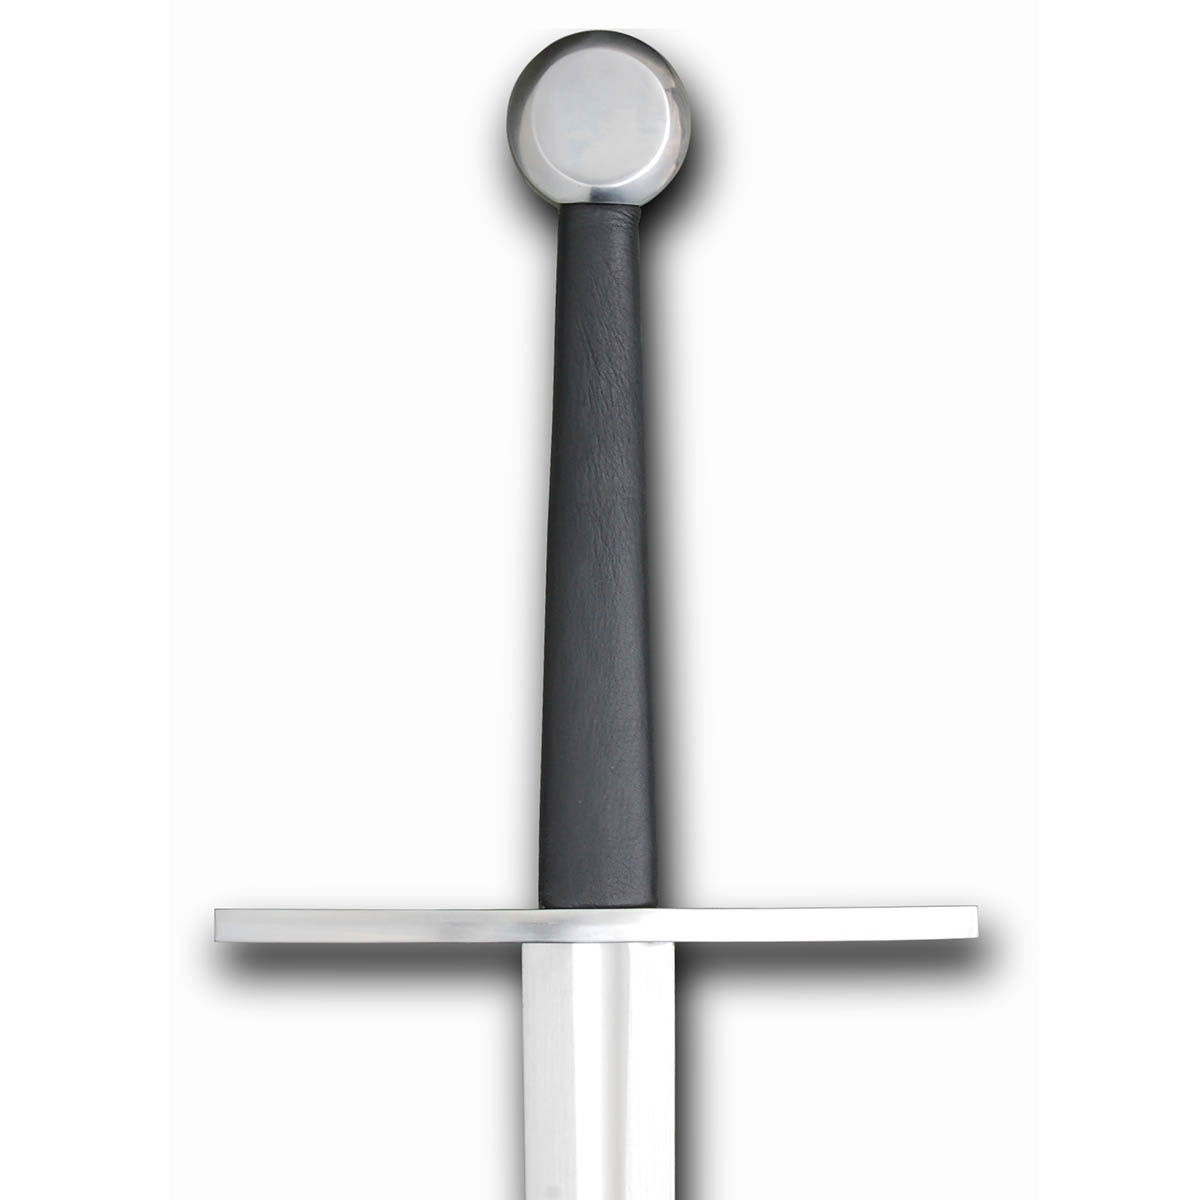 Hanwei / Tinker Sharp Bastard Sword with Fuller and Wheel Pommel